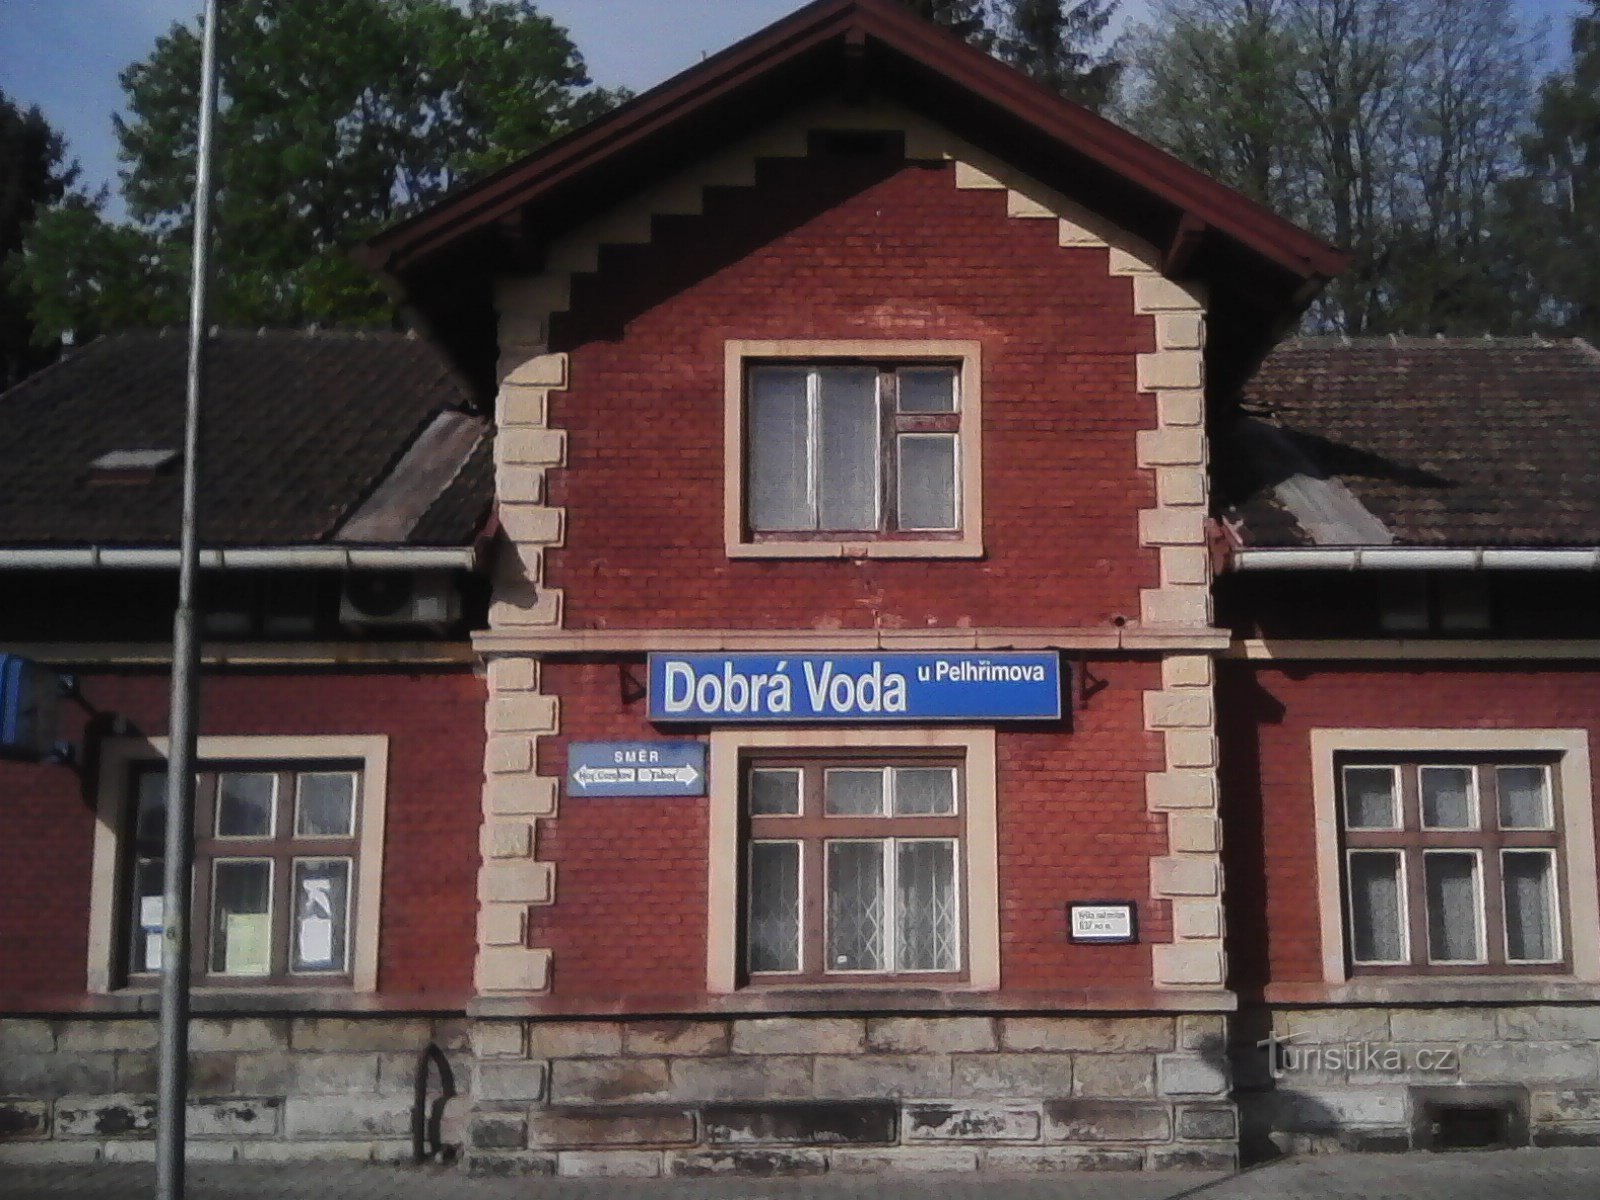 1. Nhà ga ở Dobrá Voda - điểm xuất phát của cuộc hành hương.